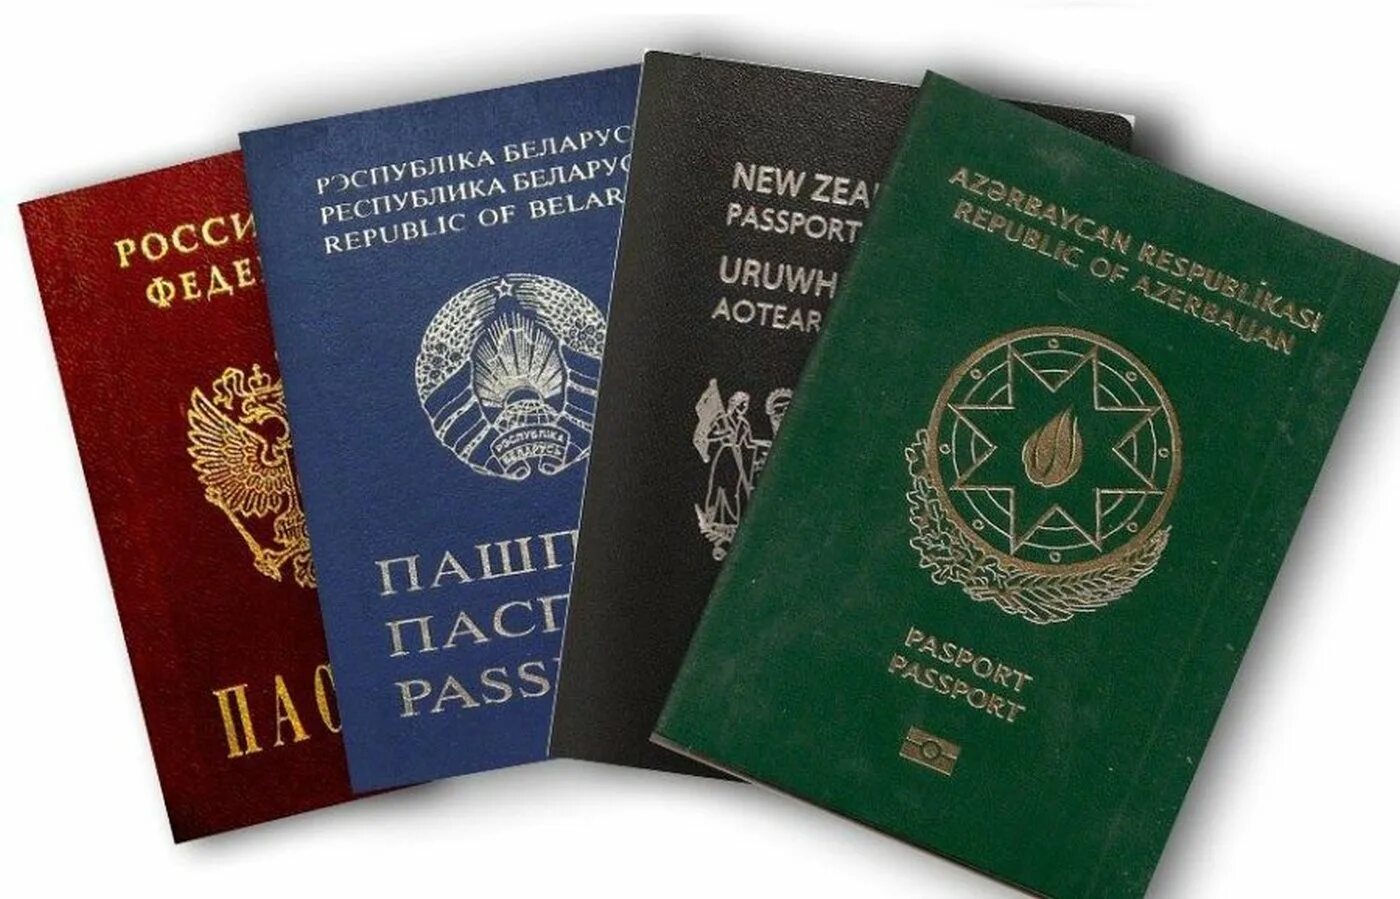 Таджикские документы. Обложки паспортов разных стран.